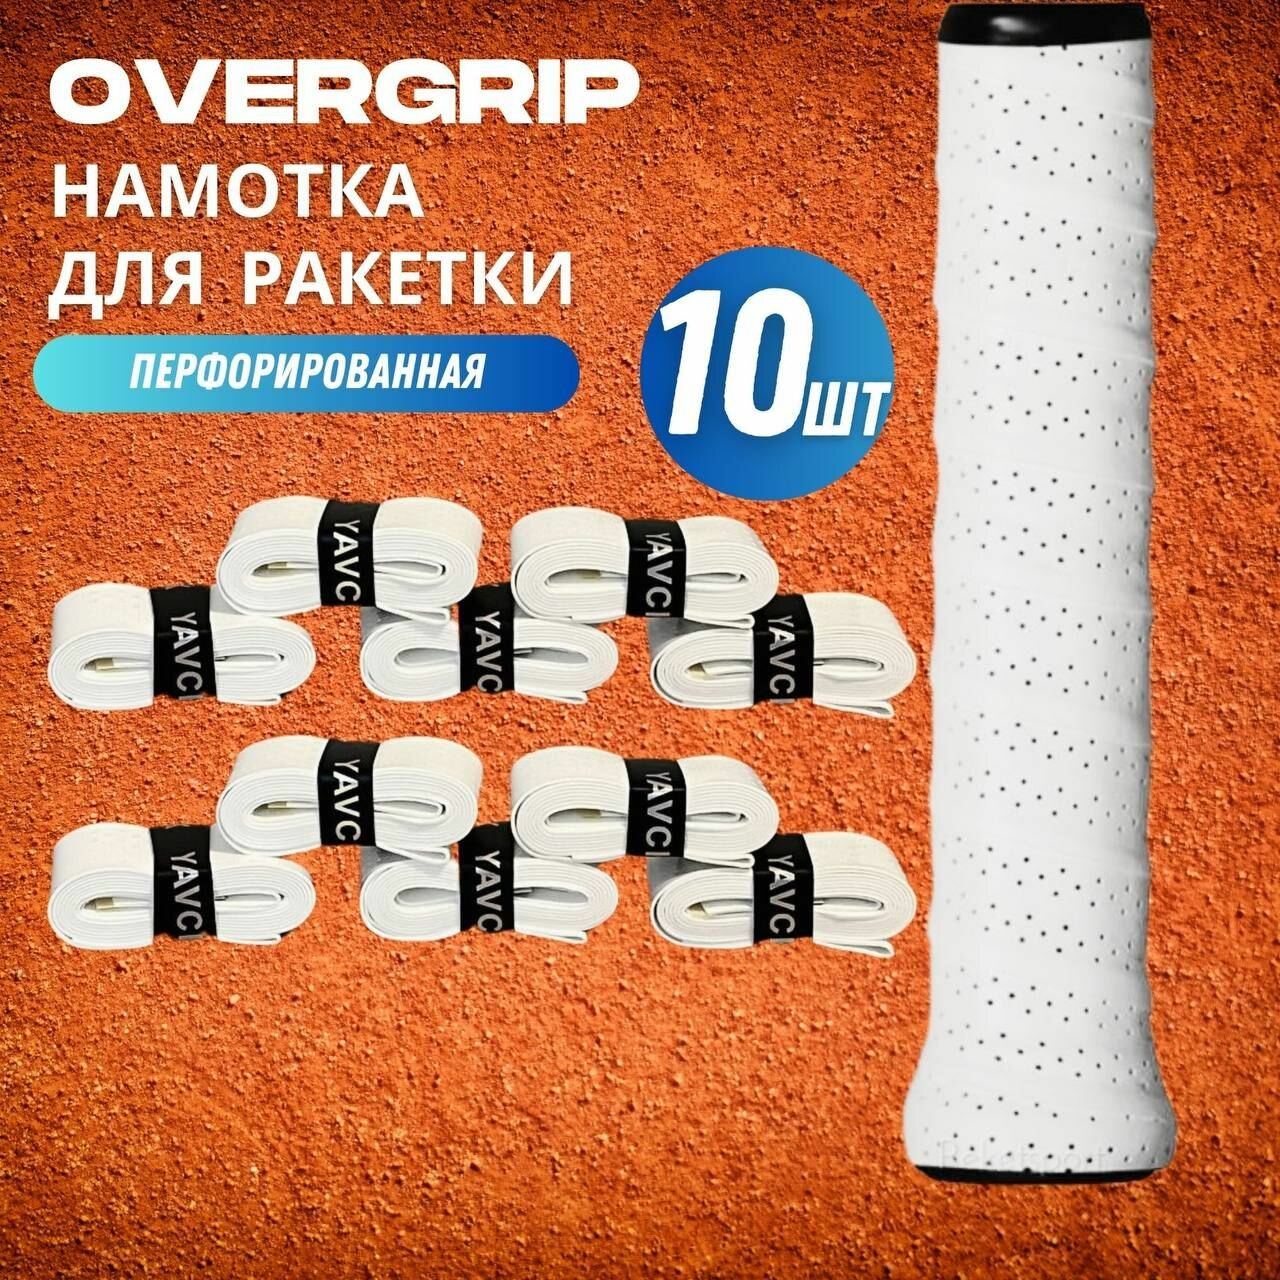 Намотка для ракетки (overgrip) белая перфорированная, 10 шт